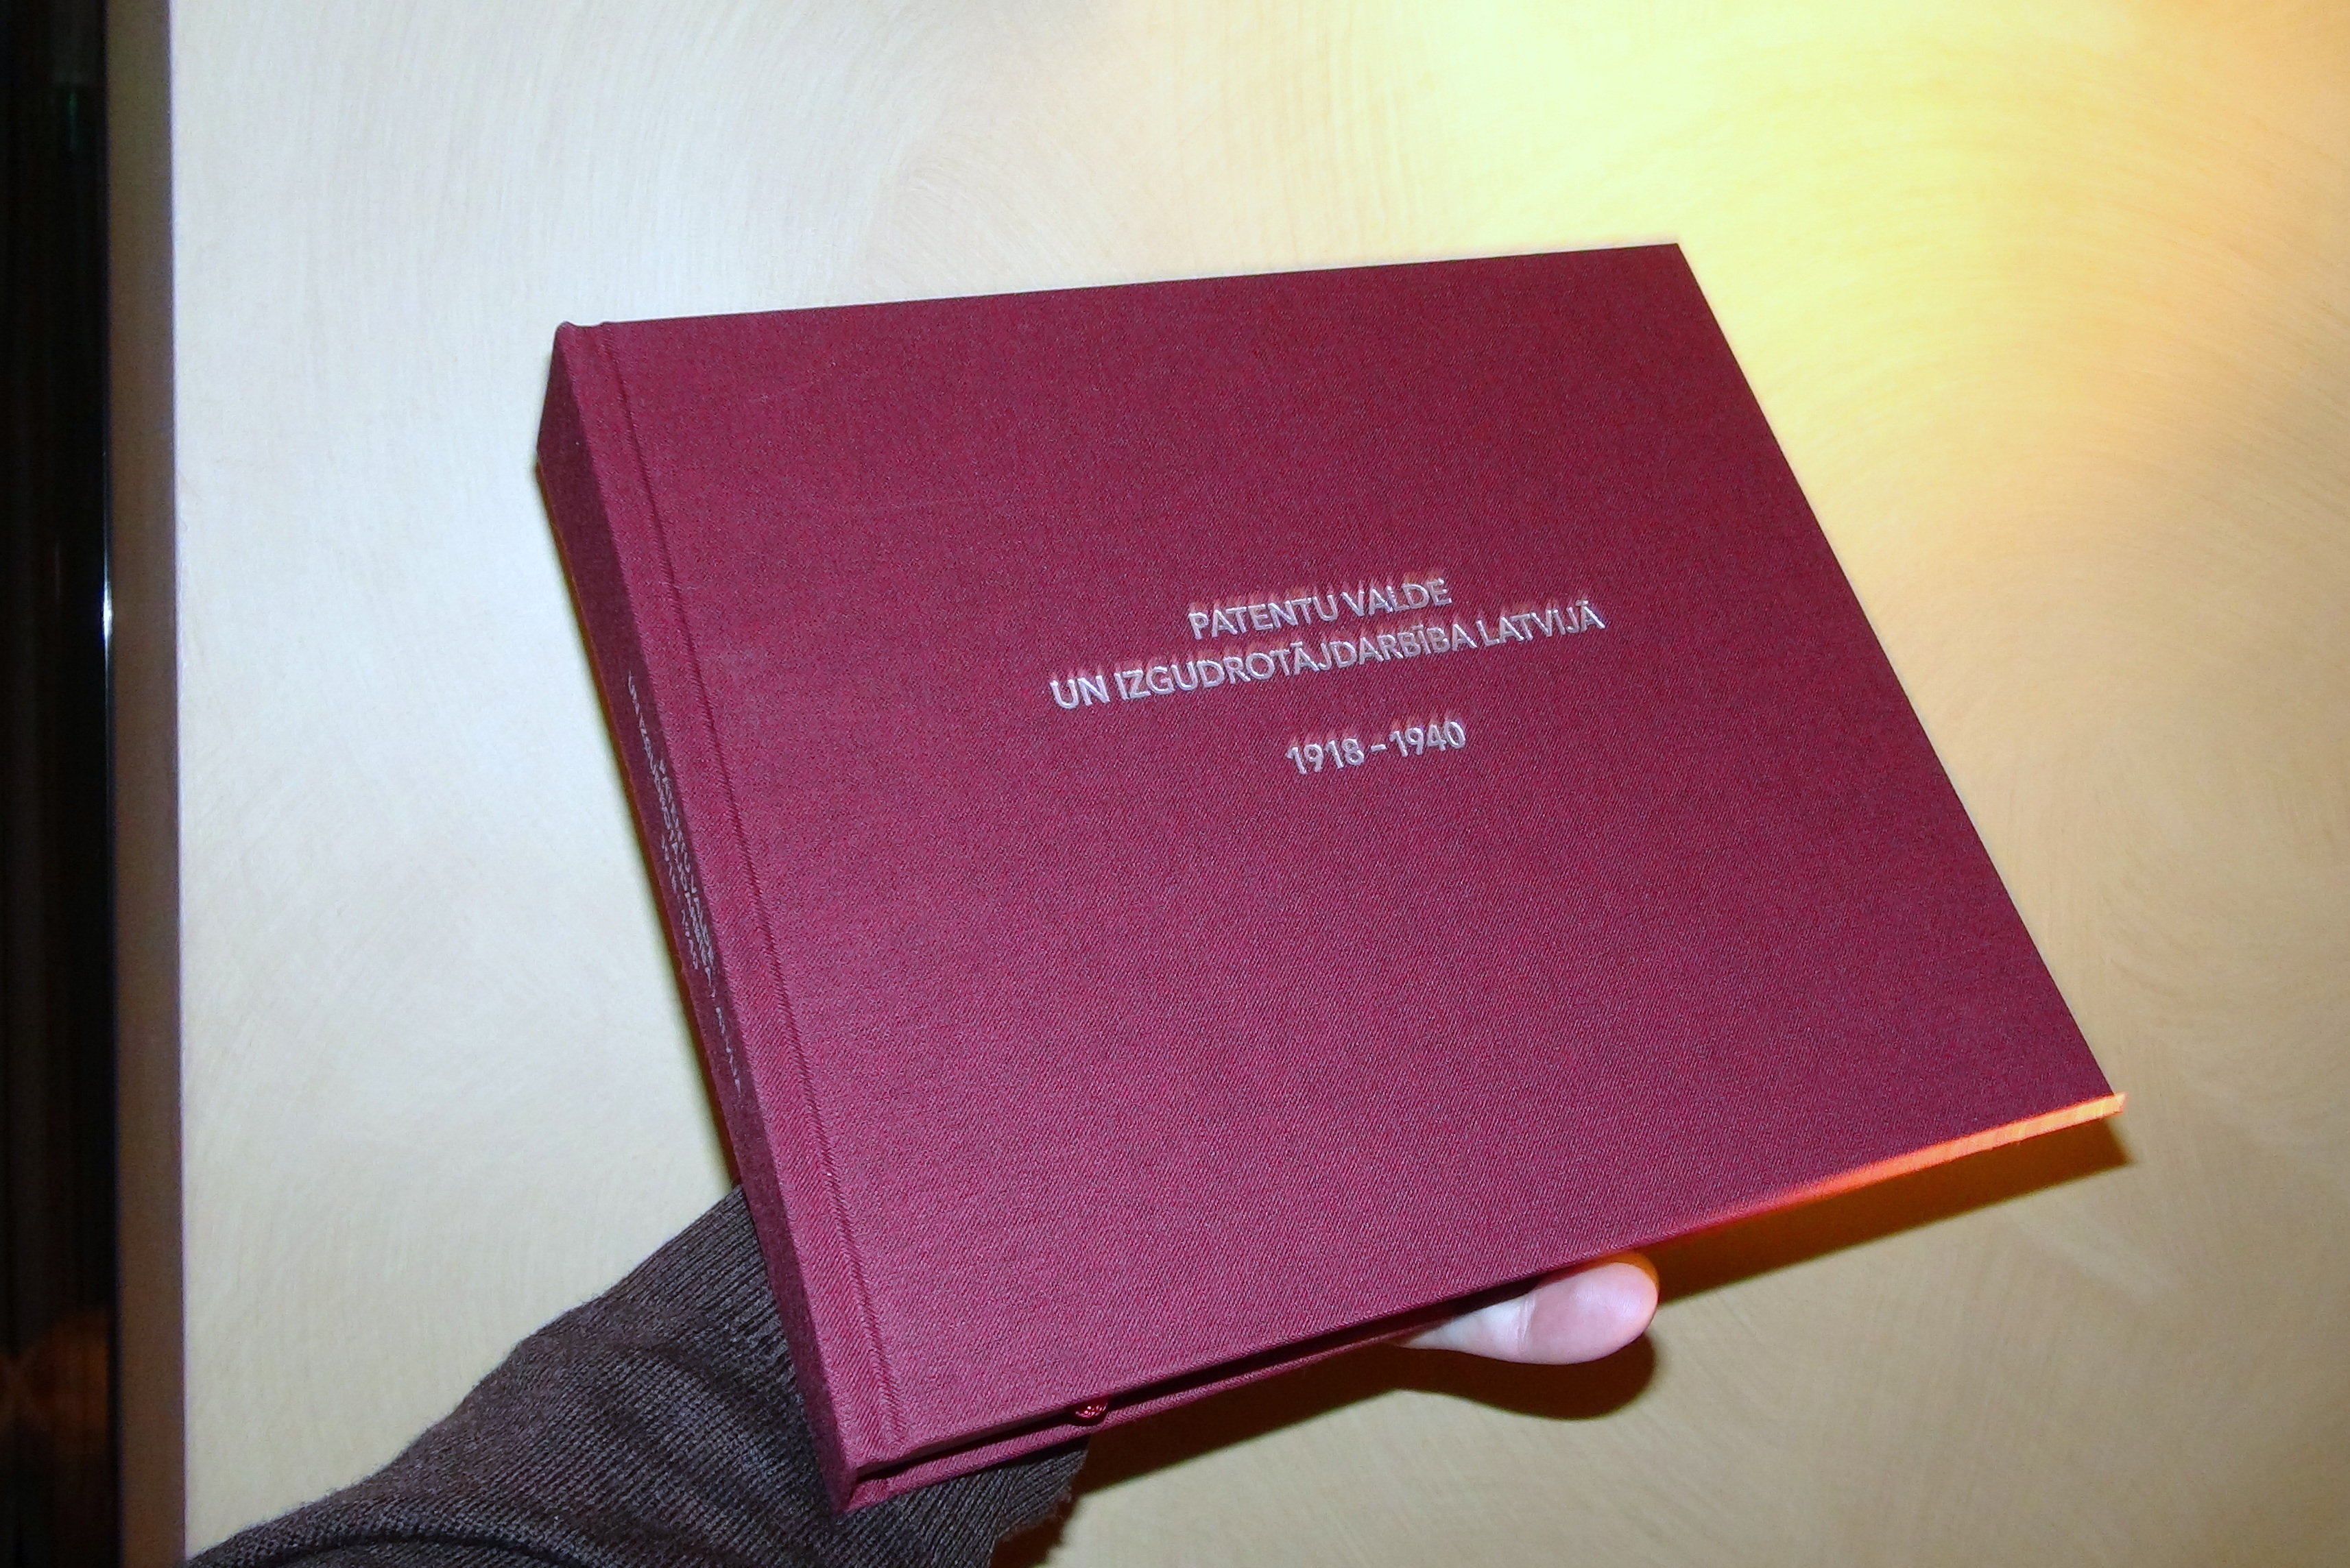 Книга "Патентное управление и изобретательство в Латвии"